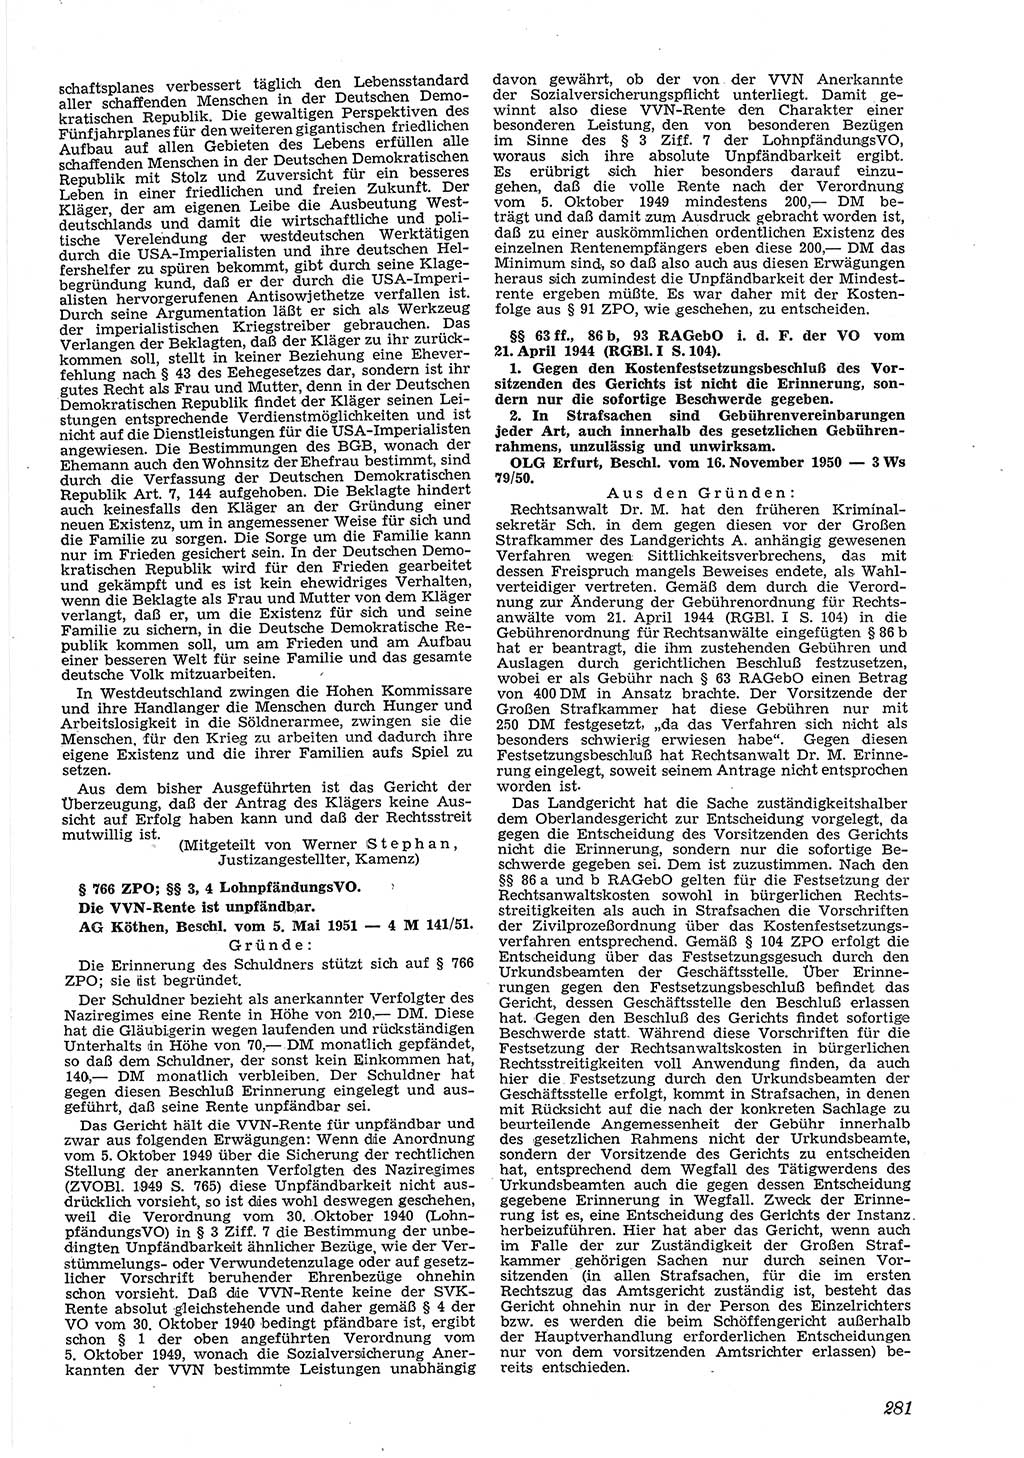 Neue Justiz (NJ), Zeitschrift für Recht und Rechtswissenschaft [Deutsche Demokratische Republik (DDR)], 5. Jahrgang 1951, Seite 281 (NJ DDR 1951, S. 281)